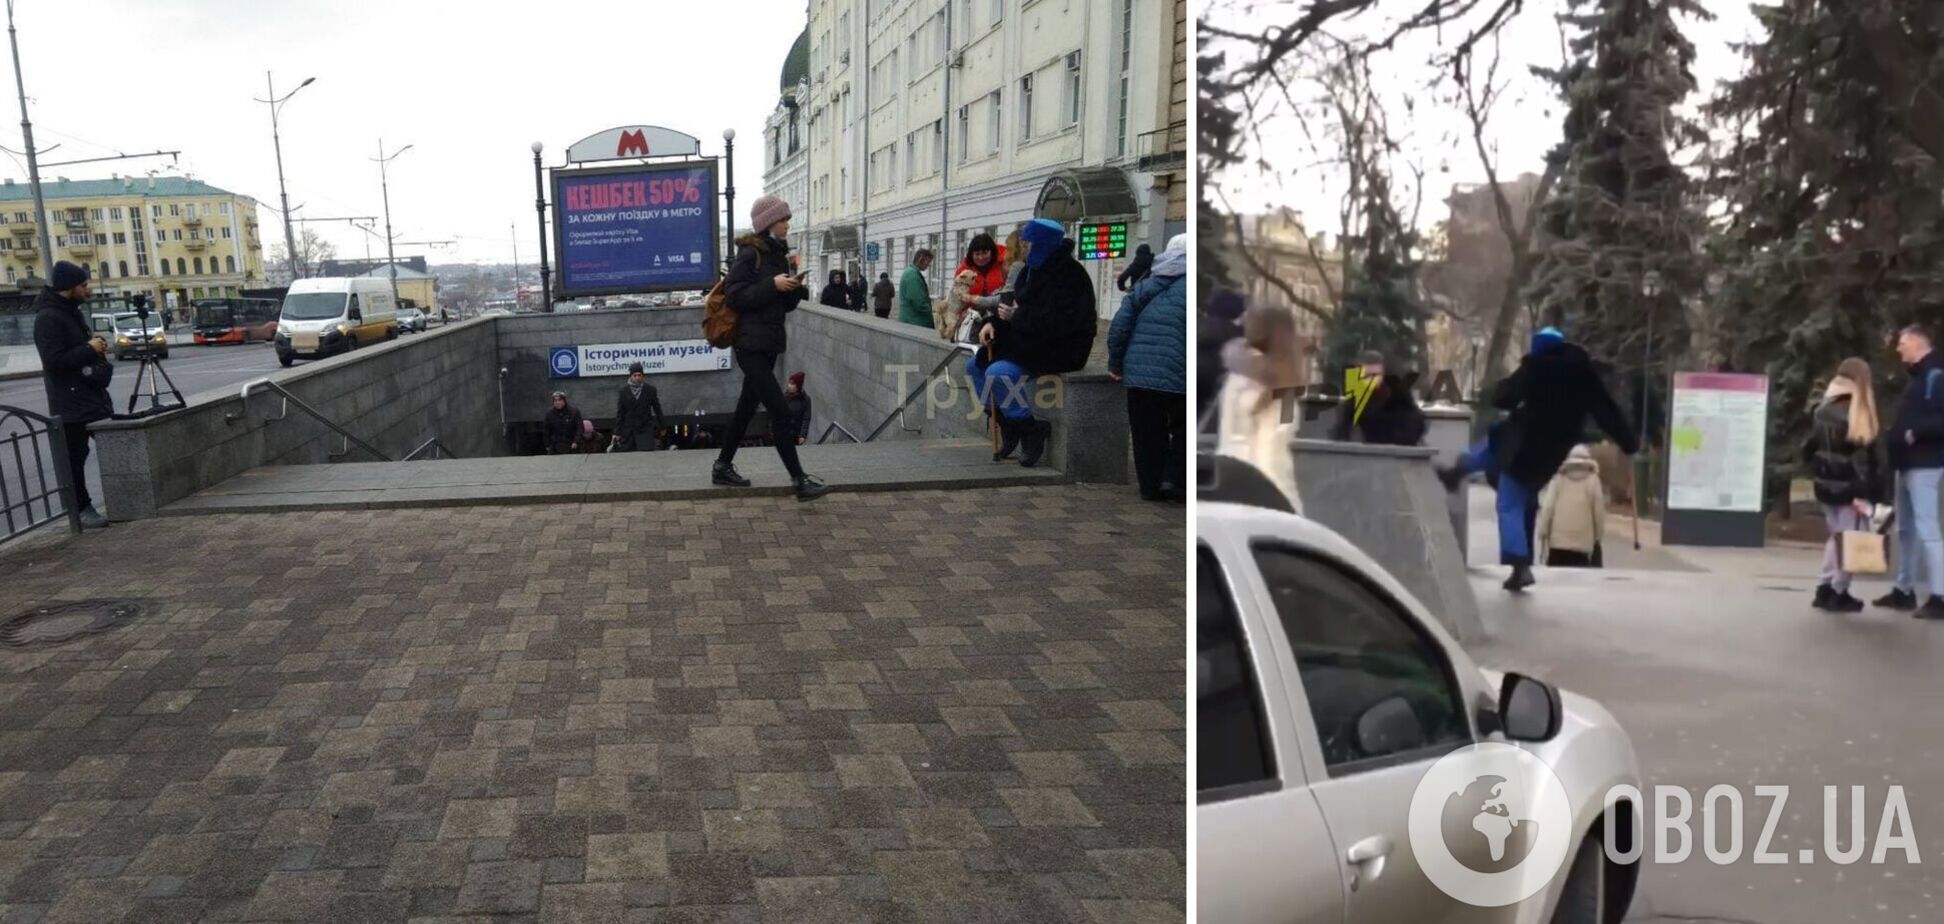 В Харькове пранкер переоделся бездомным и нападал на людей, отказавших ему в милостыне. Видео